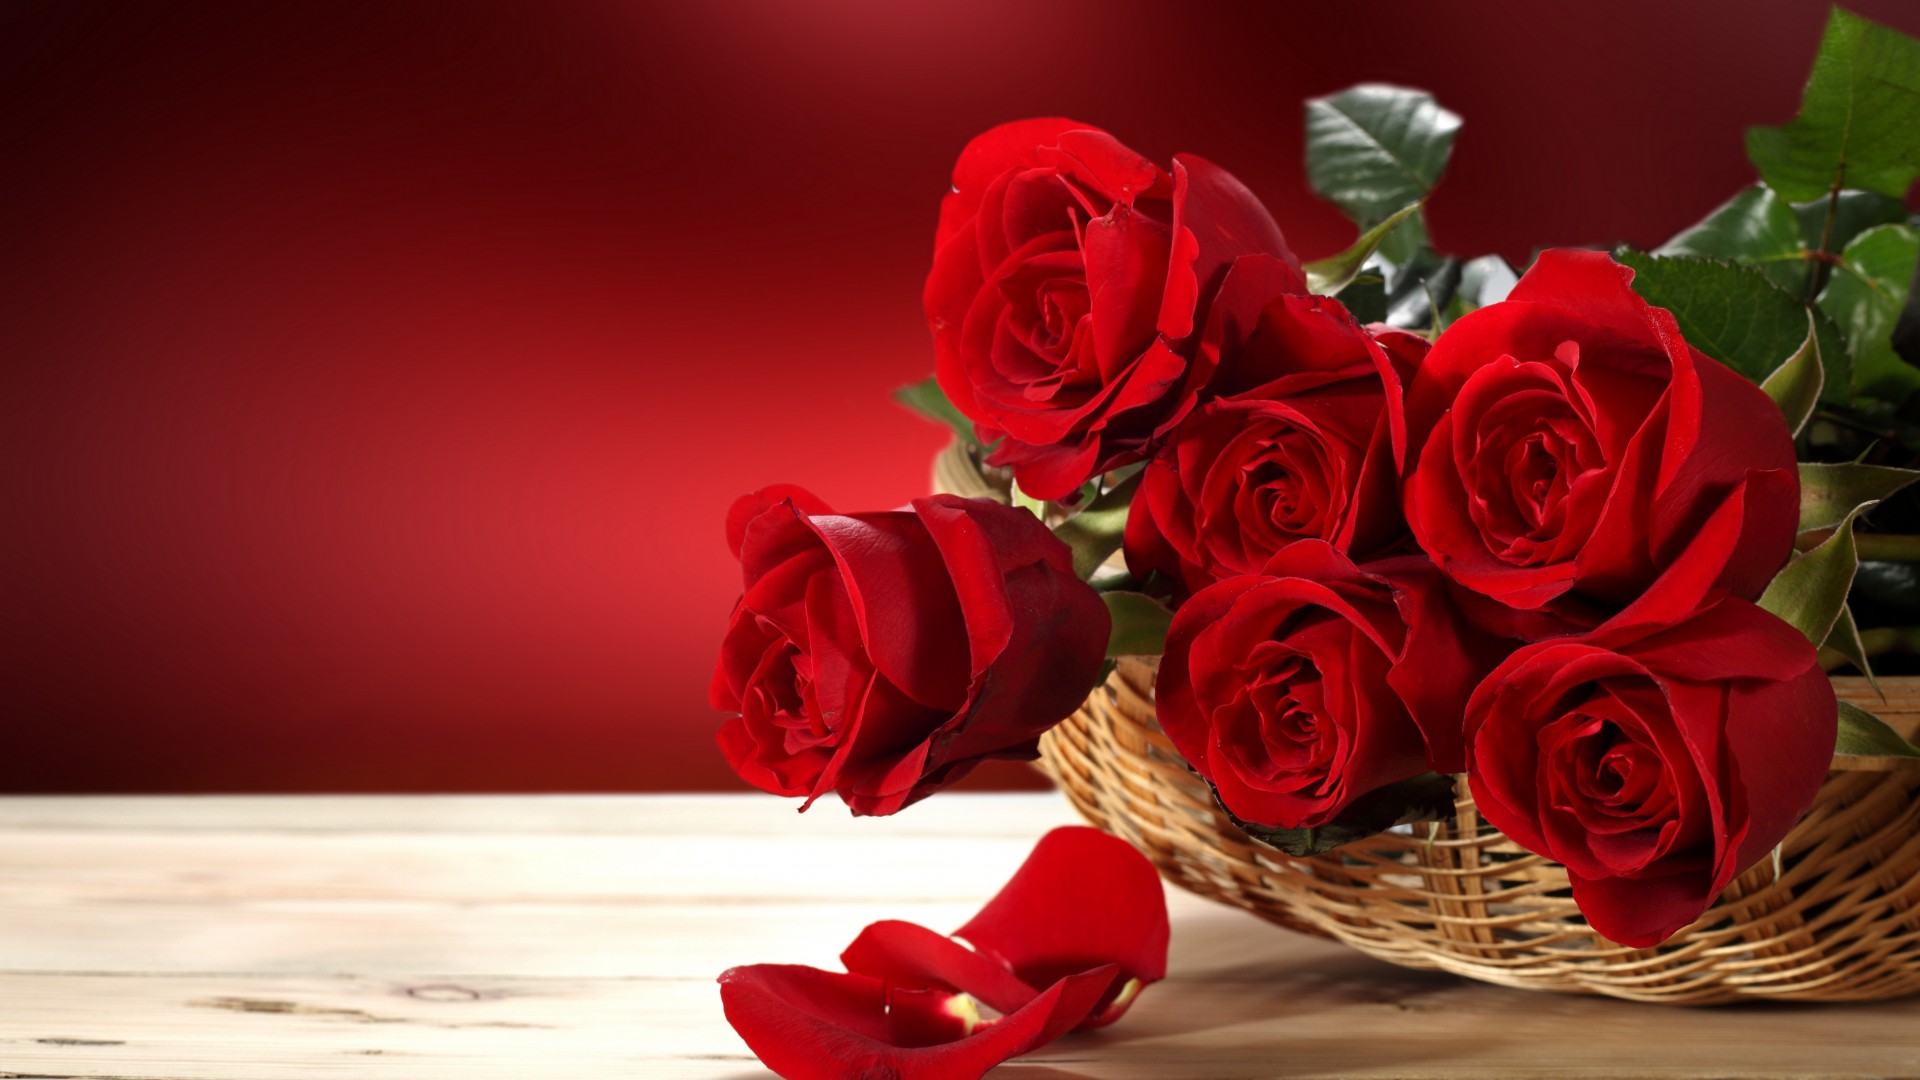 Roses, 5k, 4k wallpaper, Flower bouquet, red (horizontal)